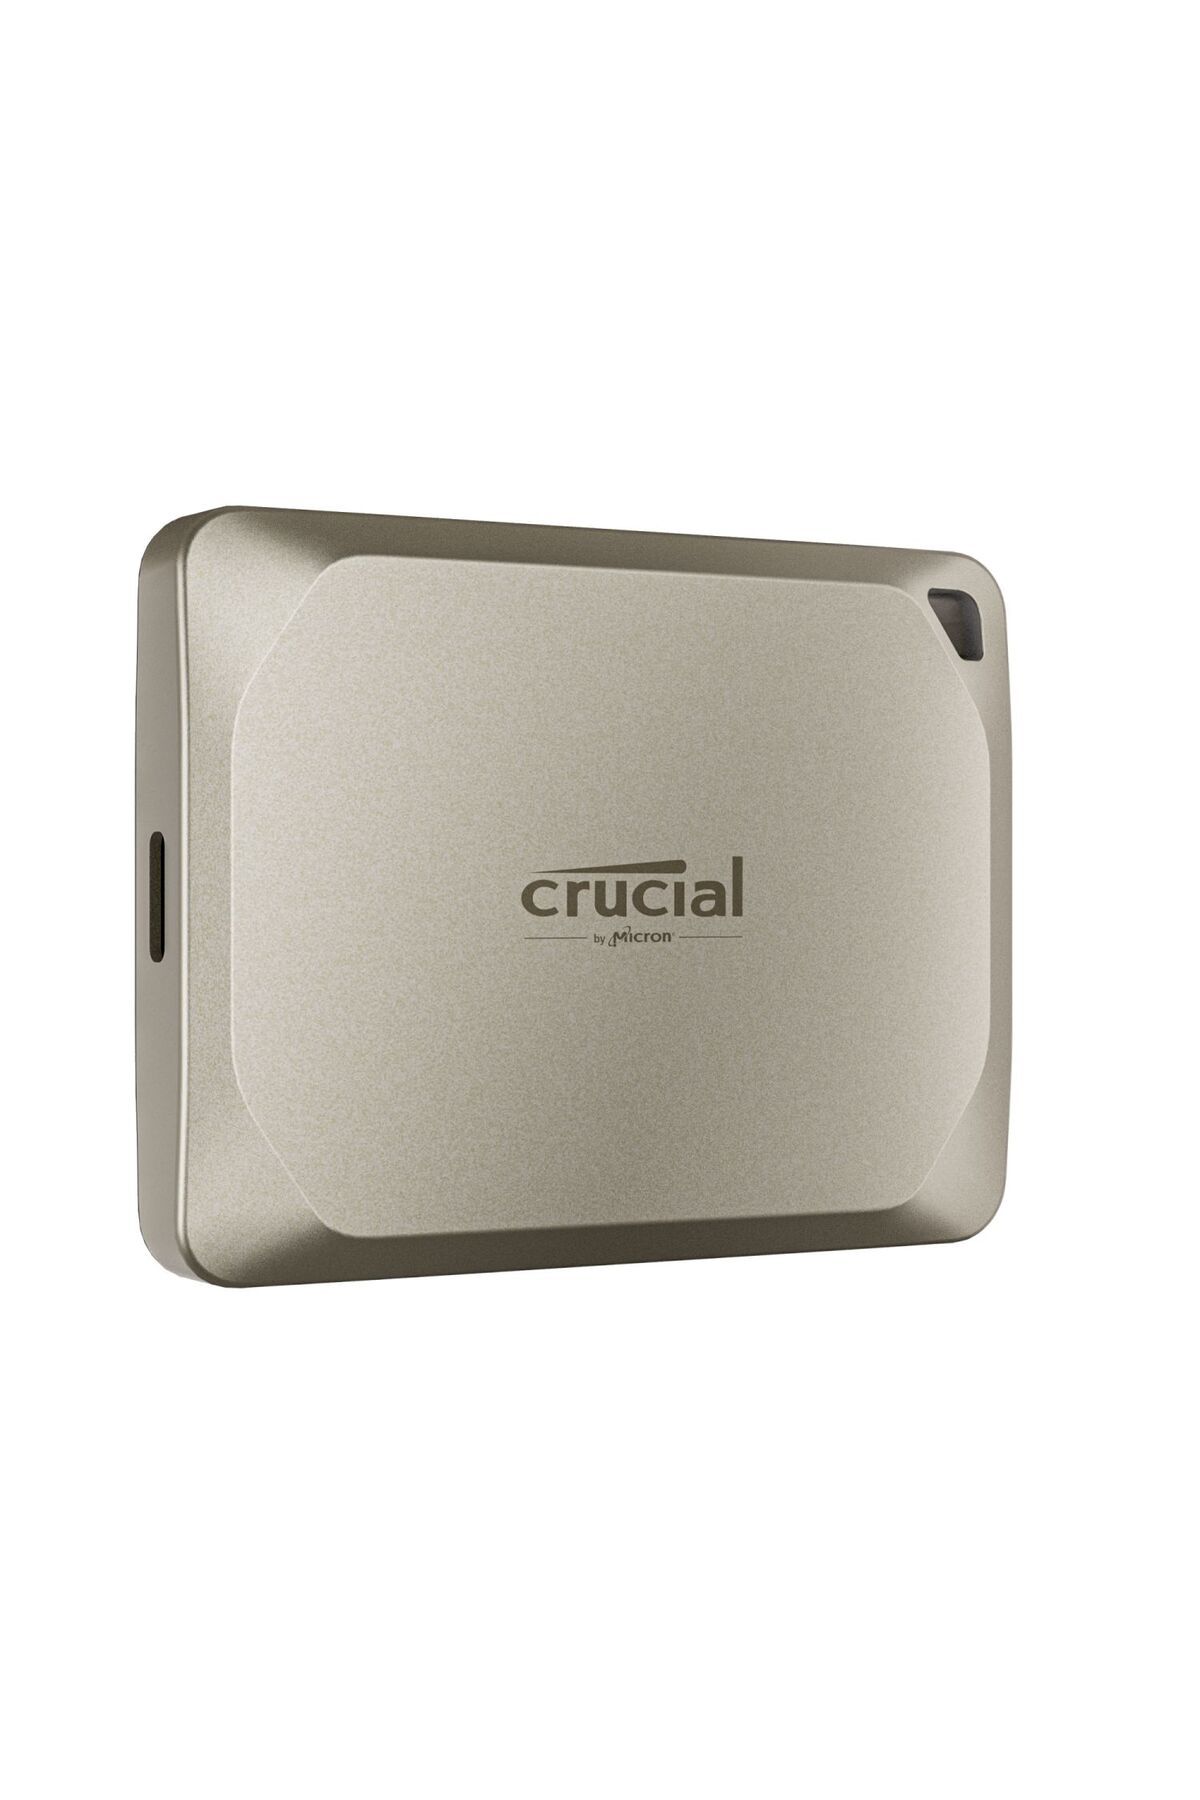 Crucial X9 Pro for Mac 2TB Taşınabilir SSD 1050 MB/s USB 3.2 Gen-2 CT2000X9PROMACSSD9B